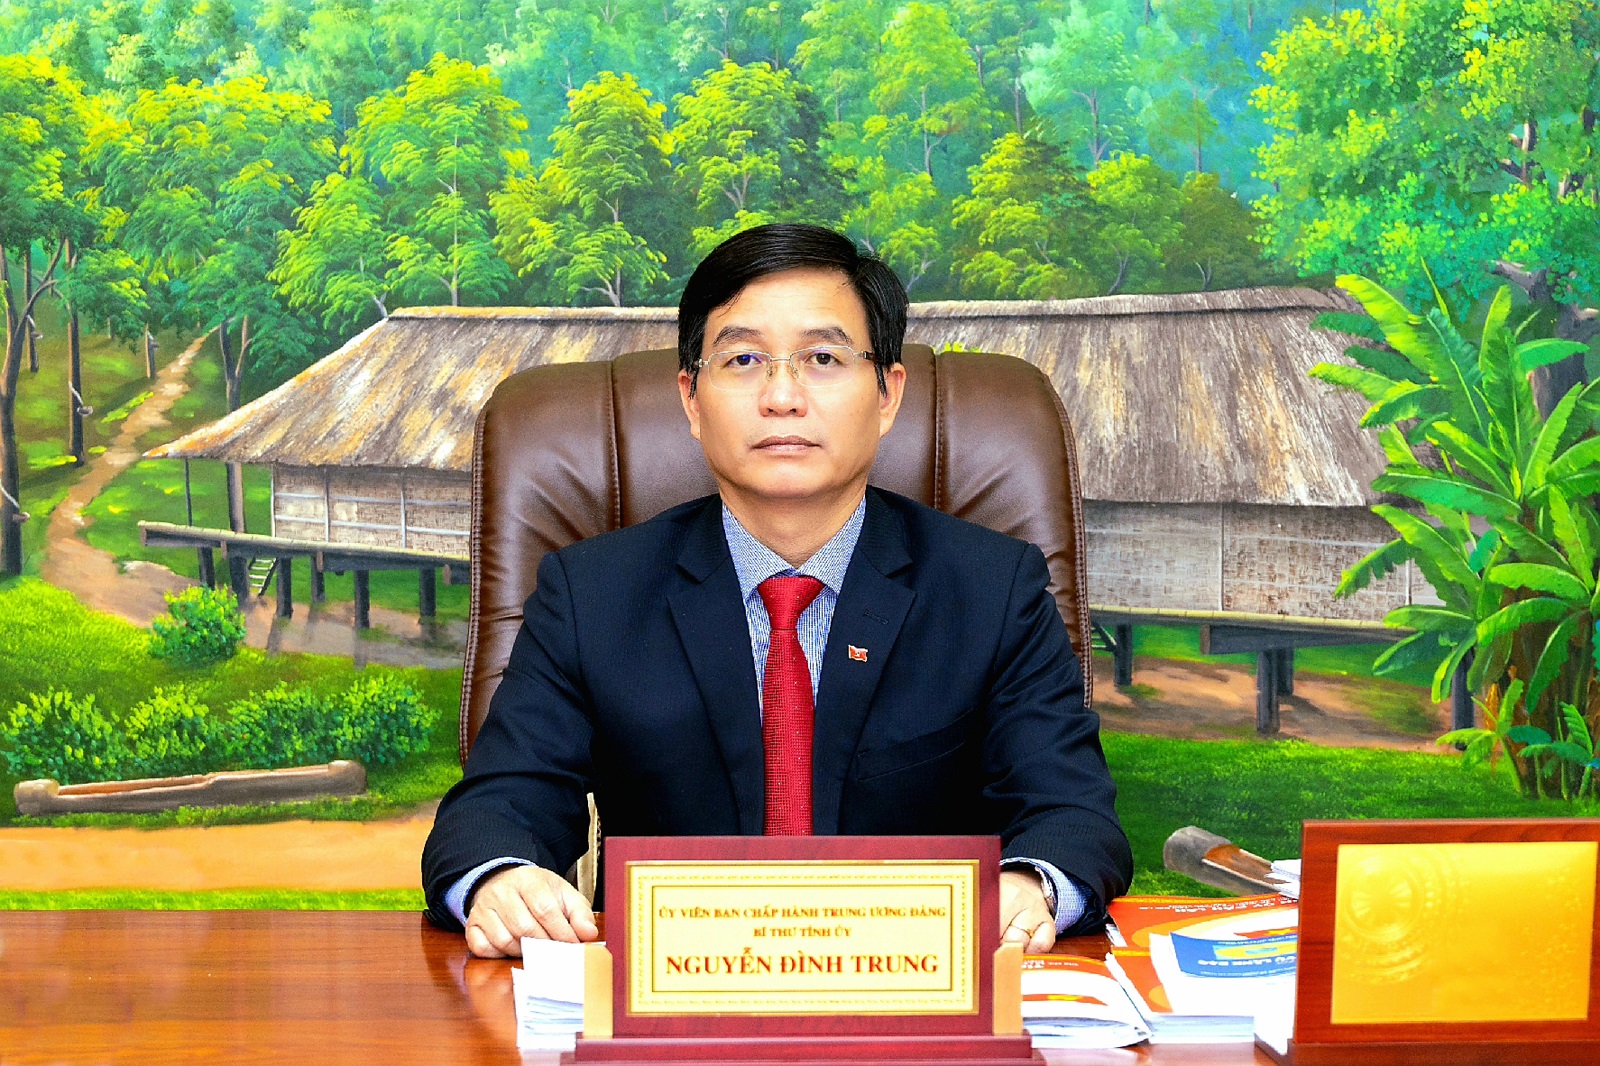 Đồng chí Nguyễn Đình Trung - Ủy viên Ban chấp hành Trung ương Đảng, Bí thư Tỉnh ủy Đắk Lắk